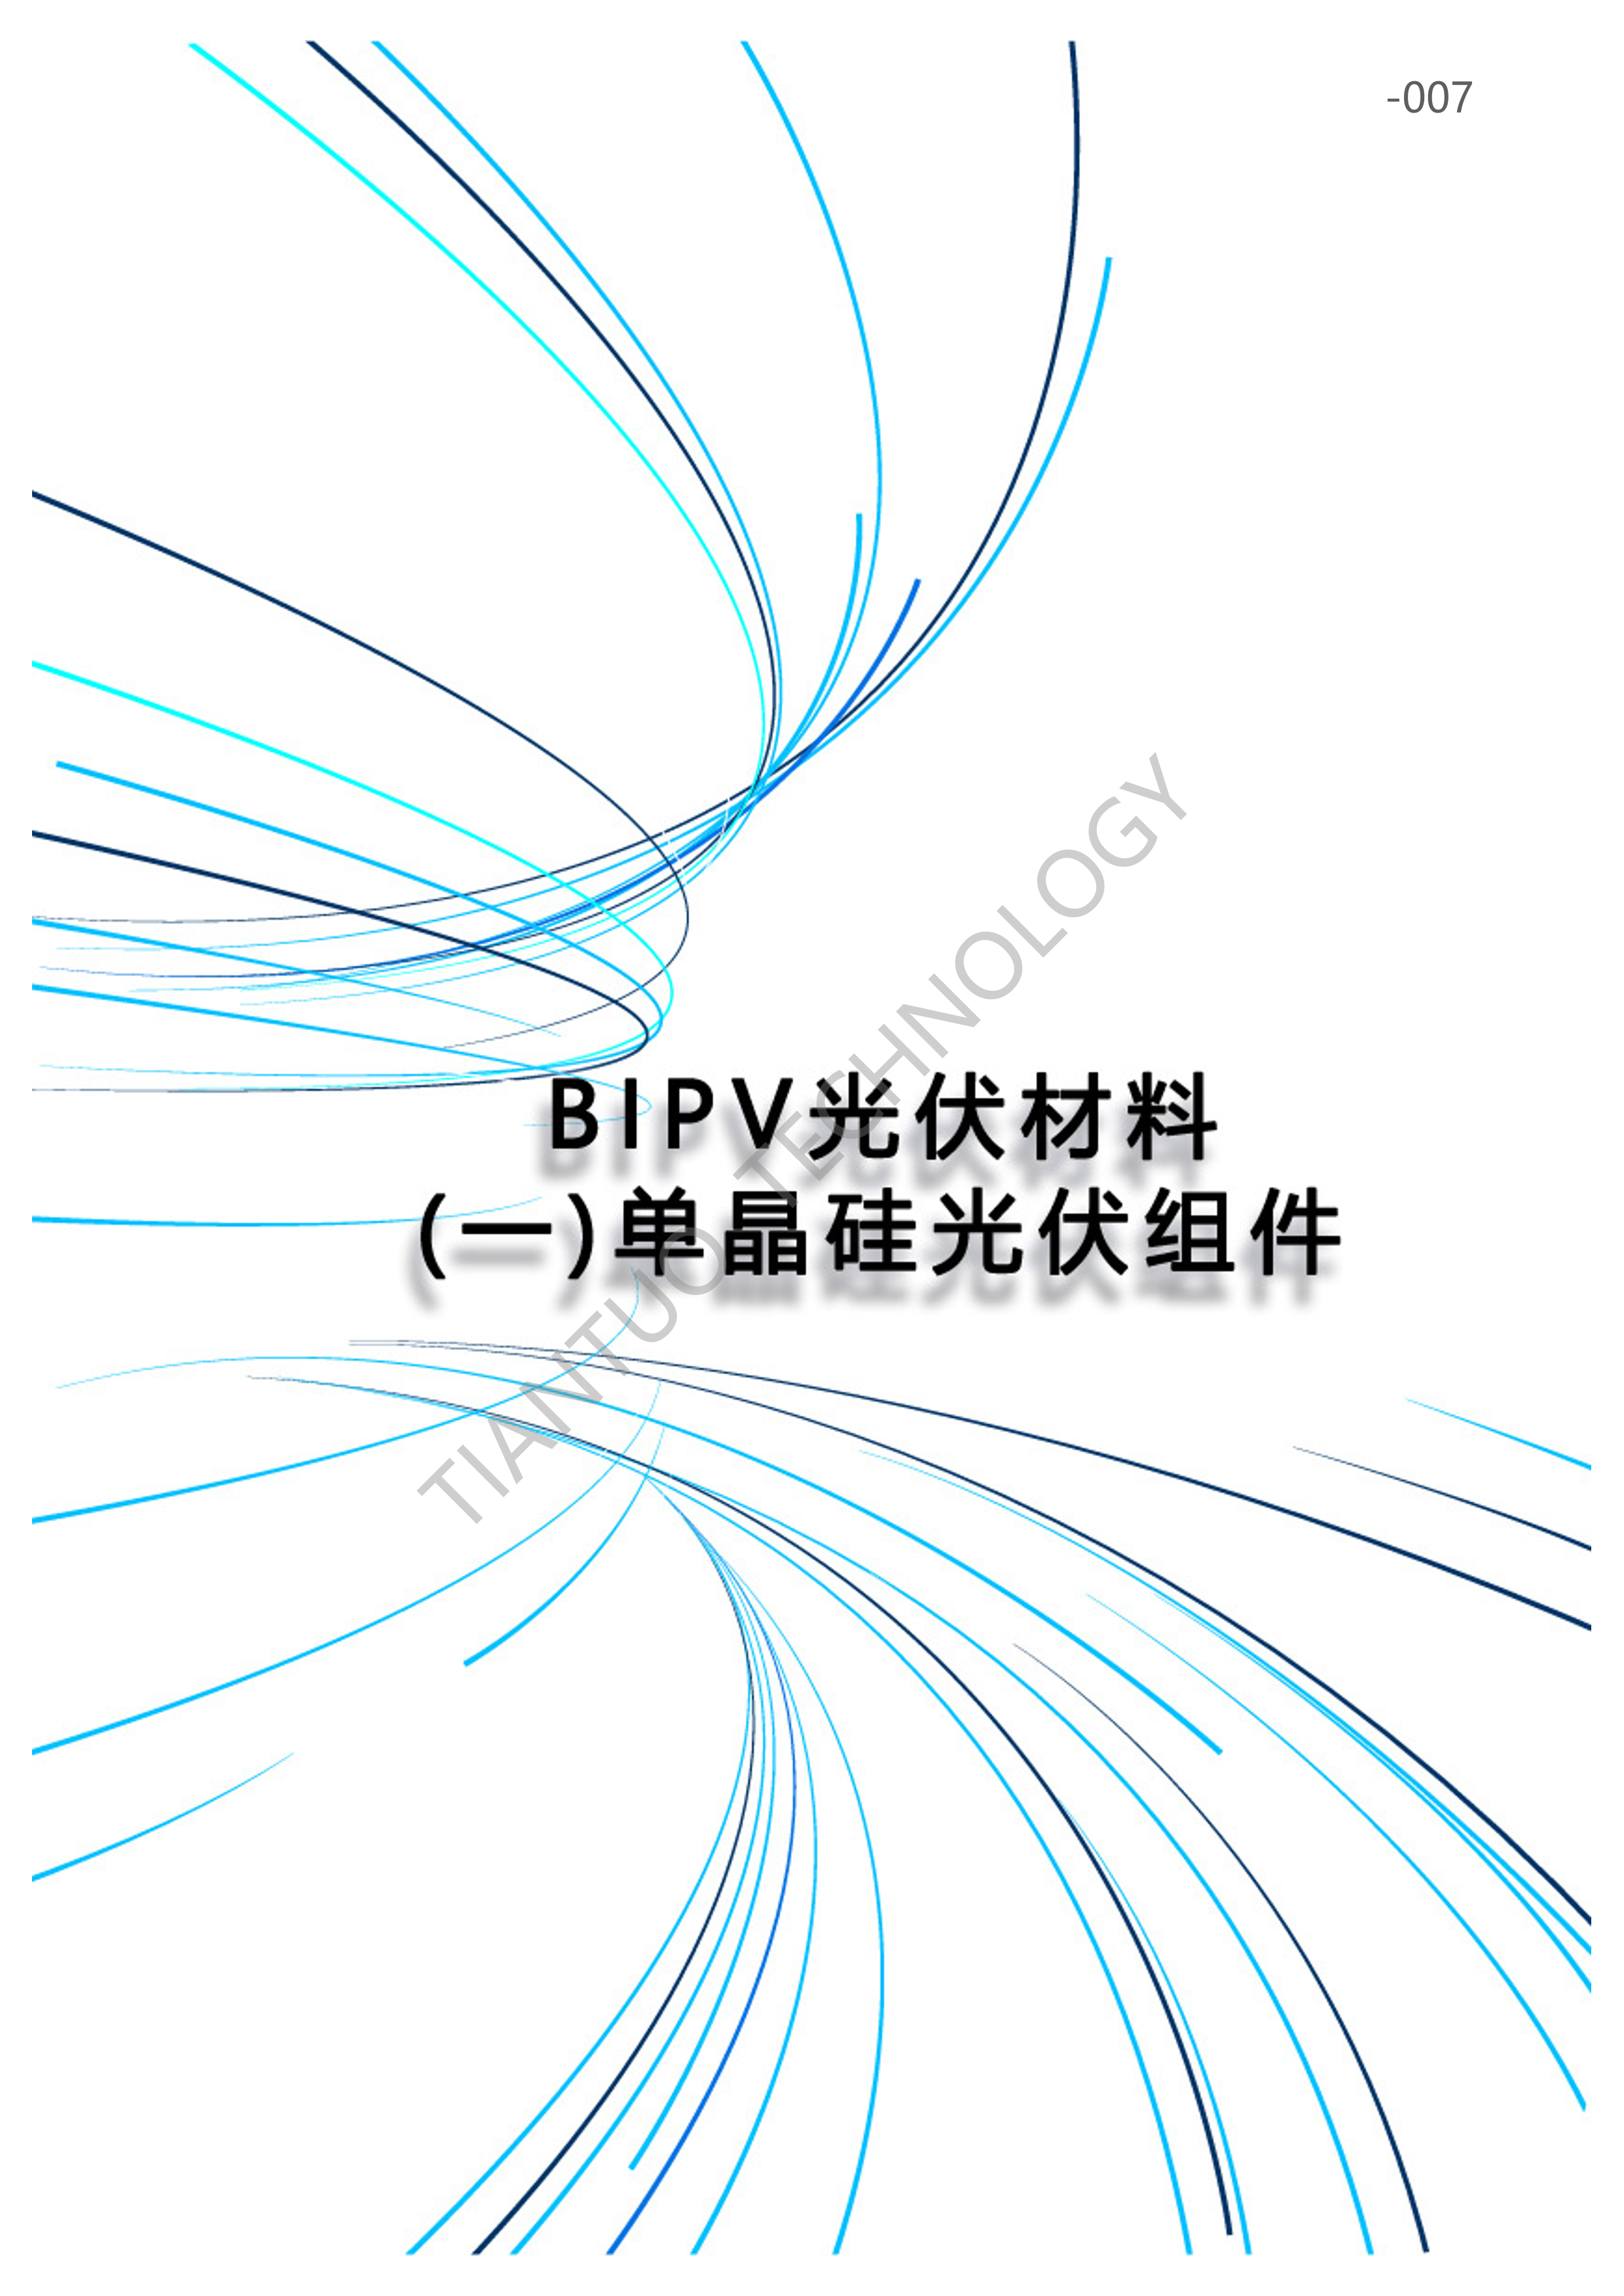 天托科技_BIPV分布式光伏发电技术手册5.0(水印版)_10.png